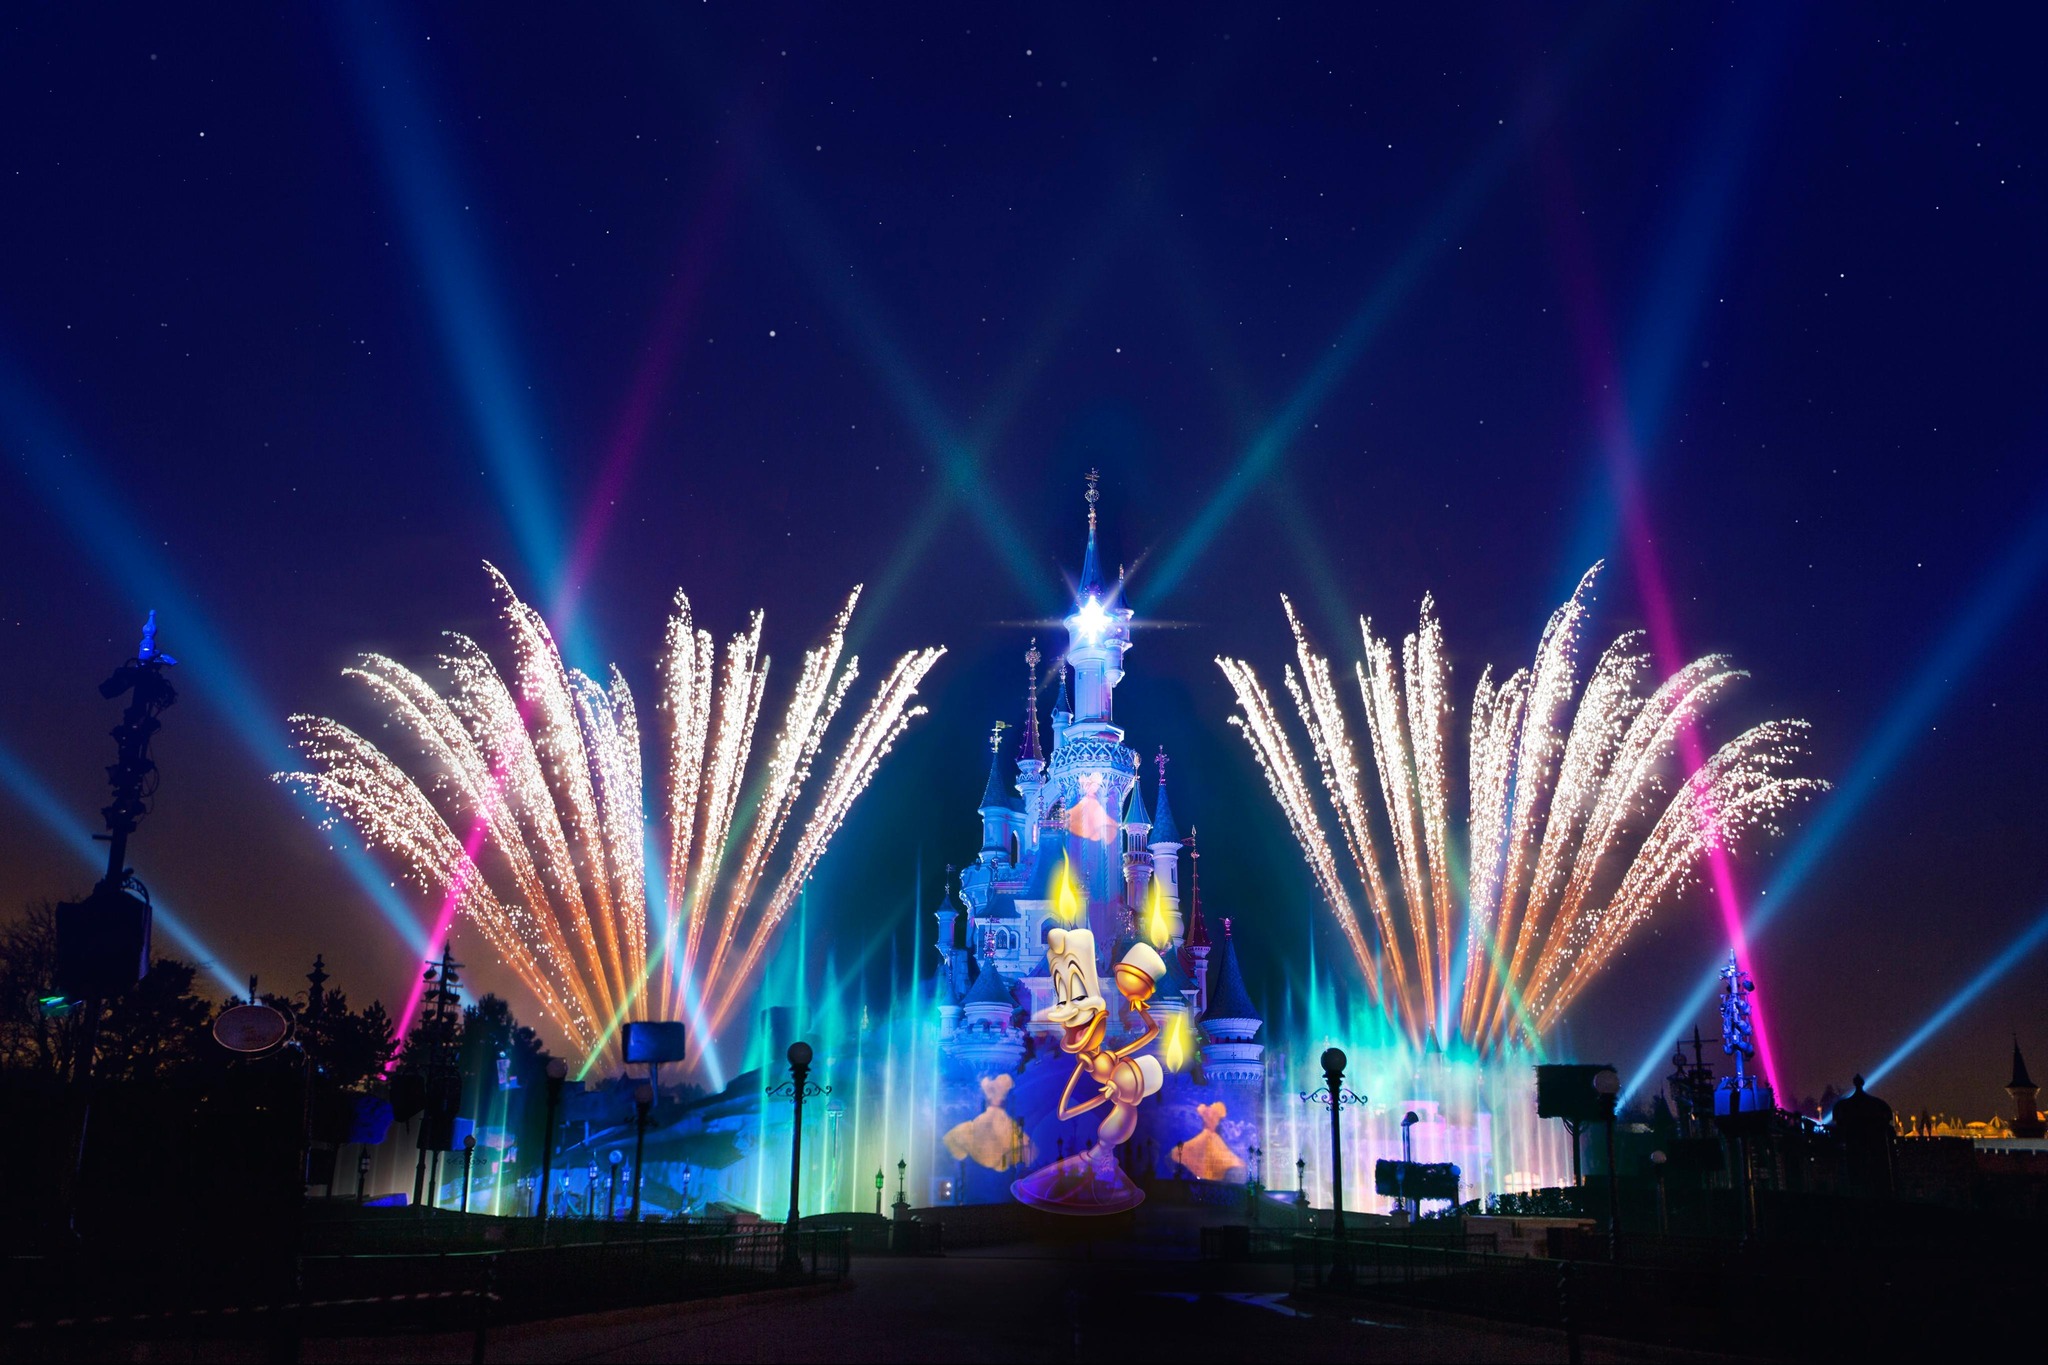 Disney Dreams spettacolo serale con fuochi d'artificio a Central Plaza sul Castello della Bella Addormentata